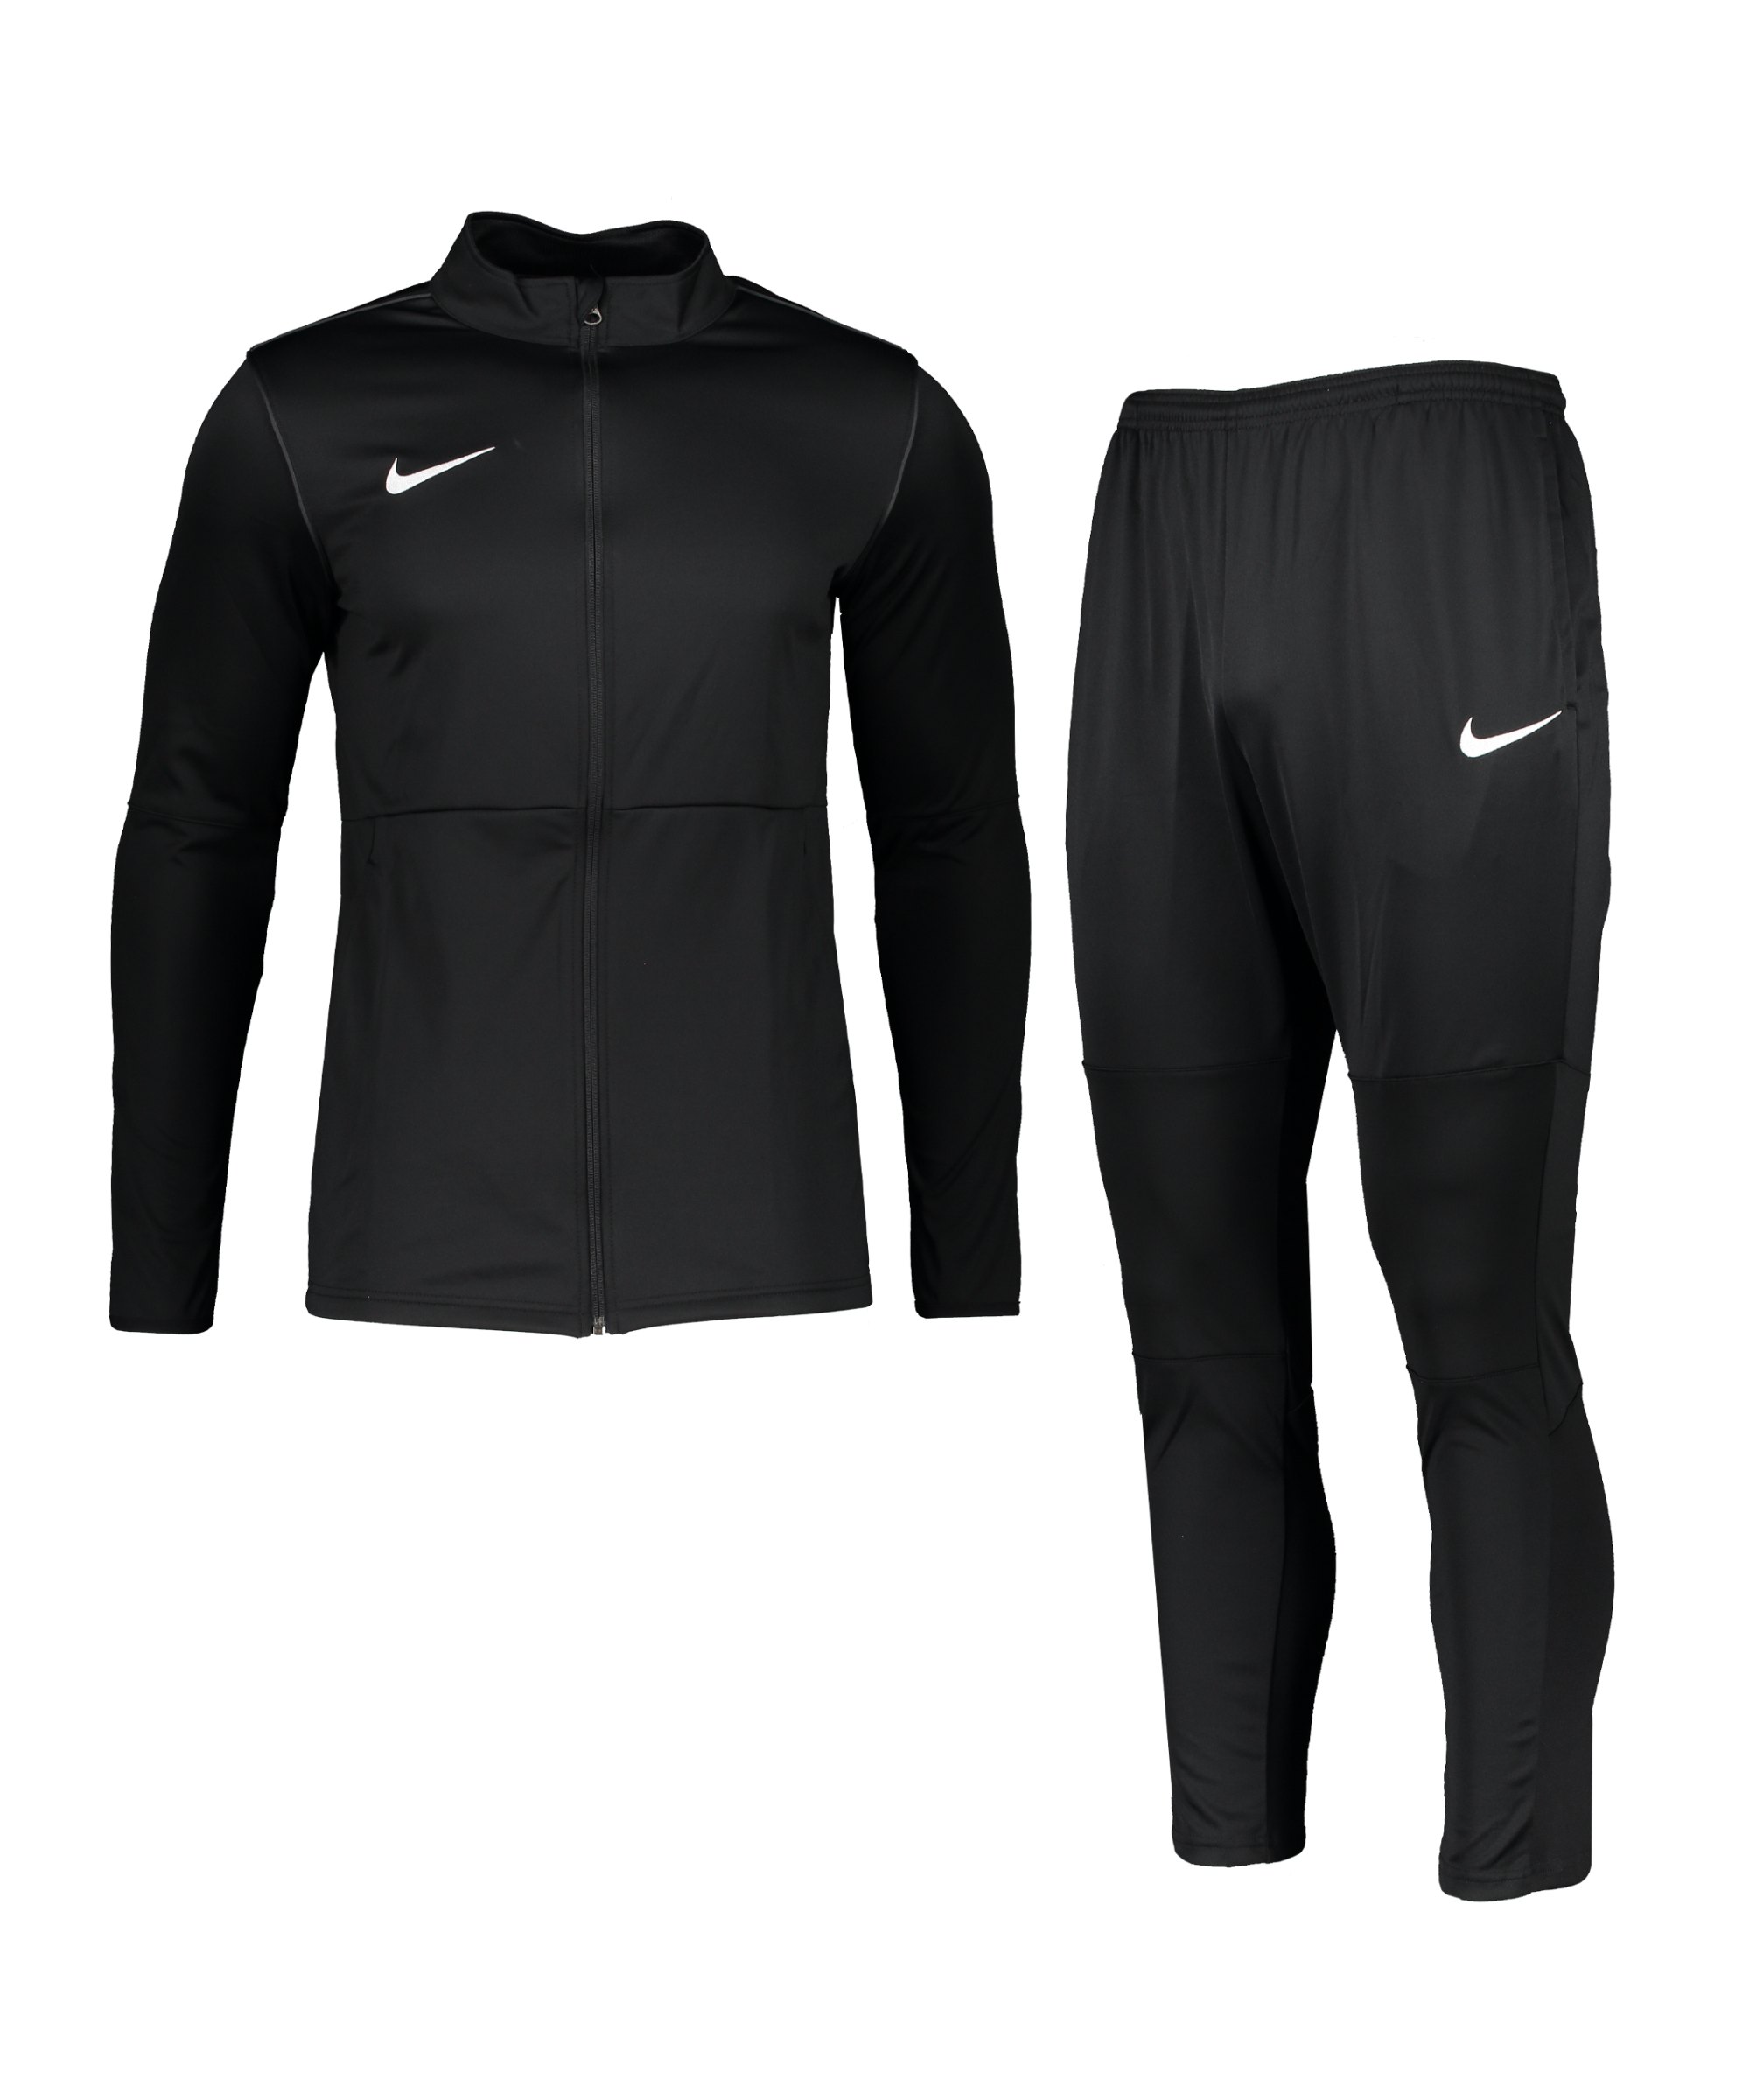 Nike Park 20 Trainingsanzug Schwarz Weiss F010 - schwarz